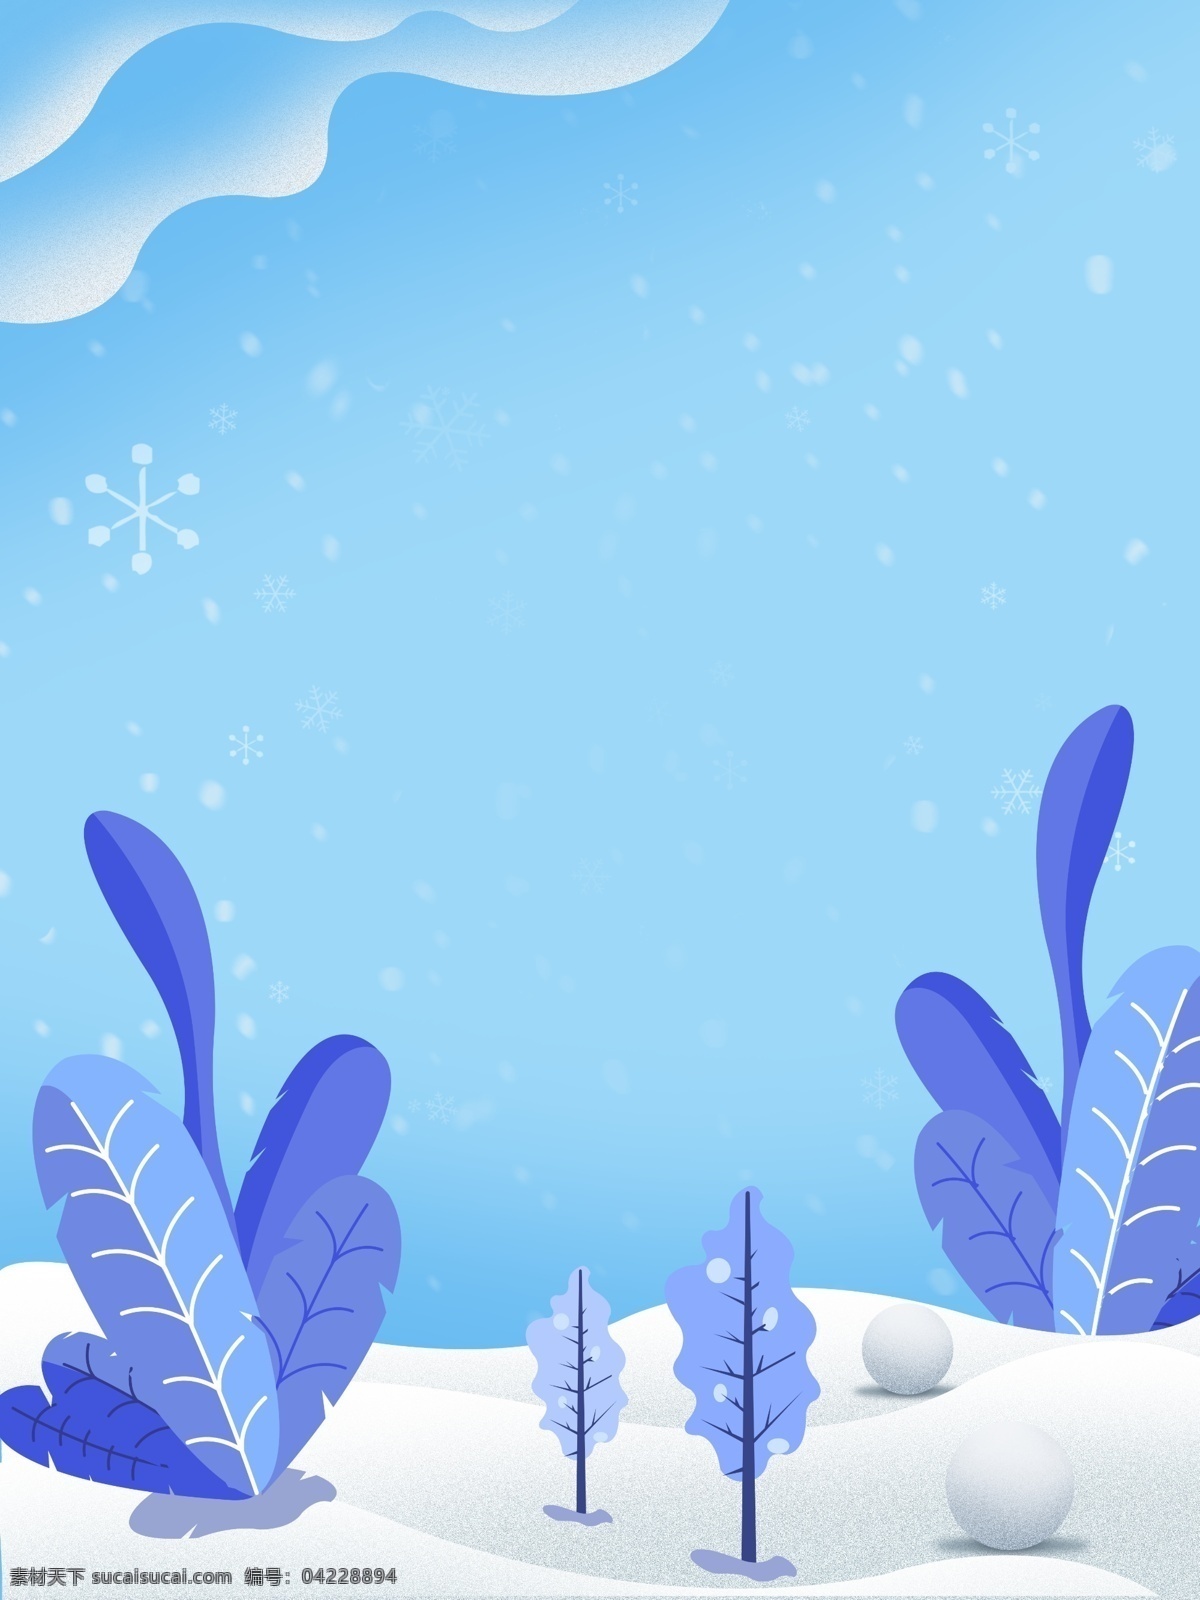 创意 蓝色 雪花 月 清新 背景 背景素材 清新背景 树木 雪地 雪花背景 12月 冬季背景 冬天 色彩背景 广告背景 手绘背景